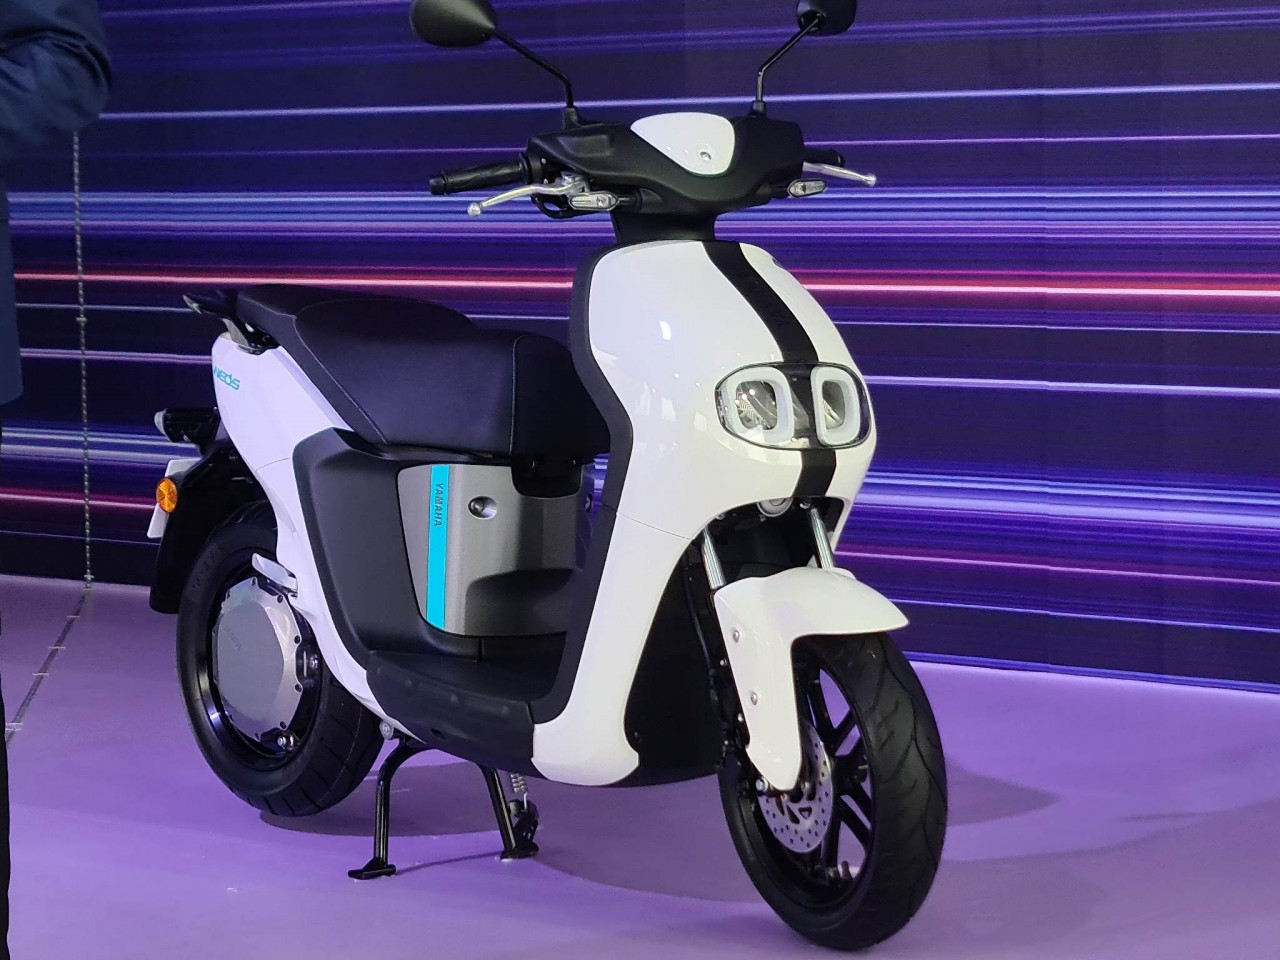 Xe điện Yamaha Neos mở bán xe điện tại Việt Nam với giá 50 triệu đồng